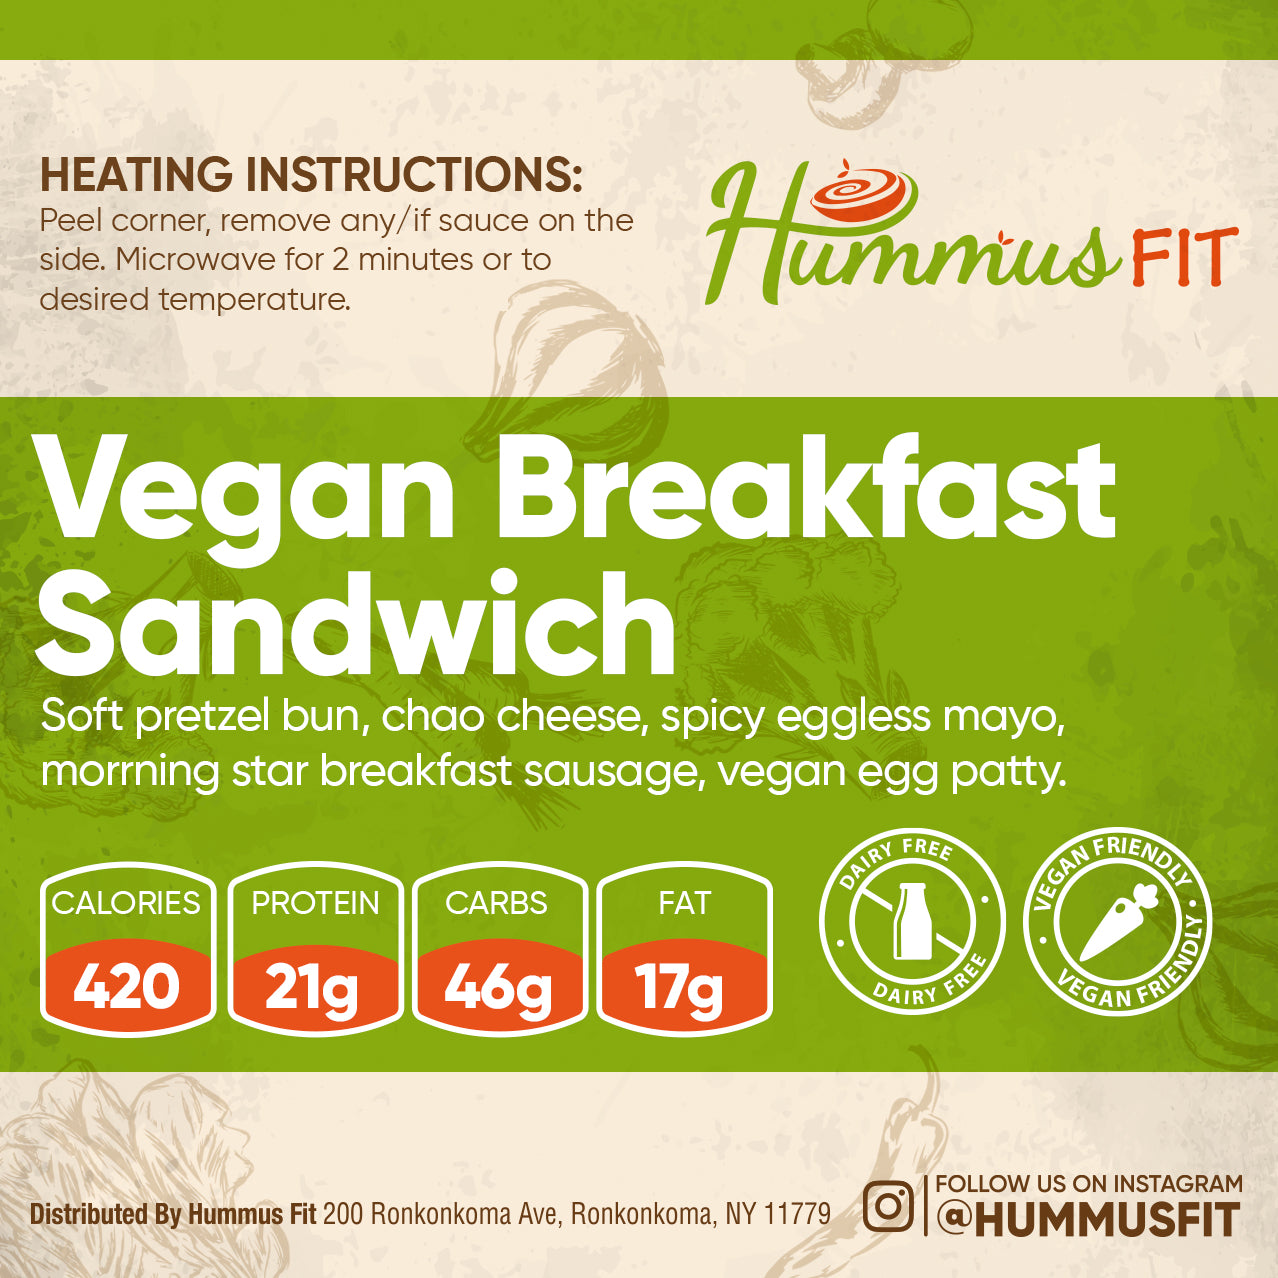 vegan breakfast sandwich meal prep service